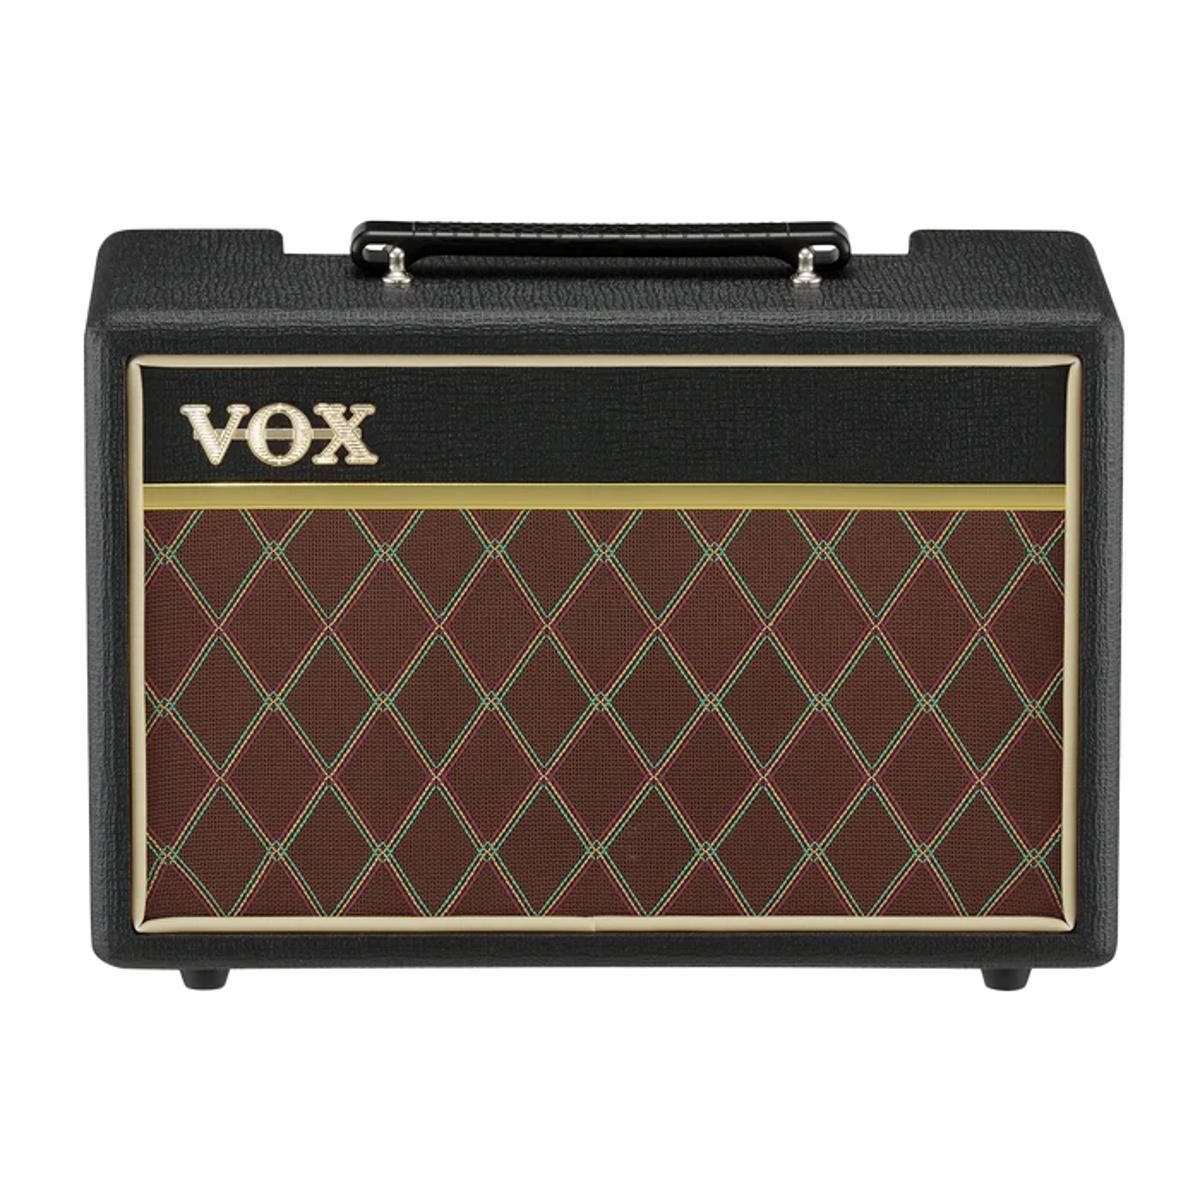 VOX Pathfinder Guitar Amplifer 10W Combo Amp